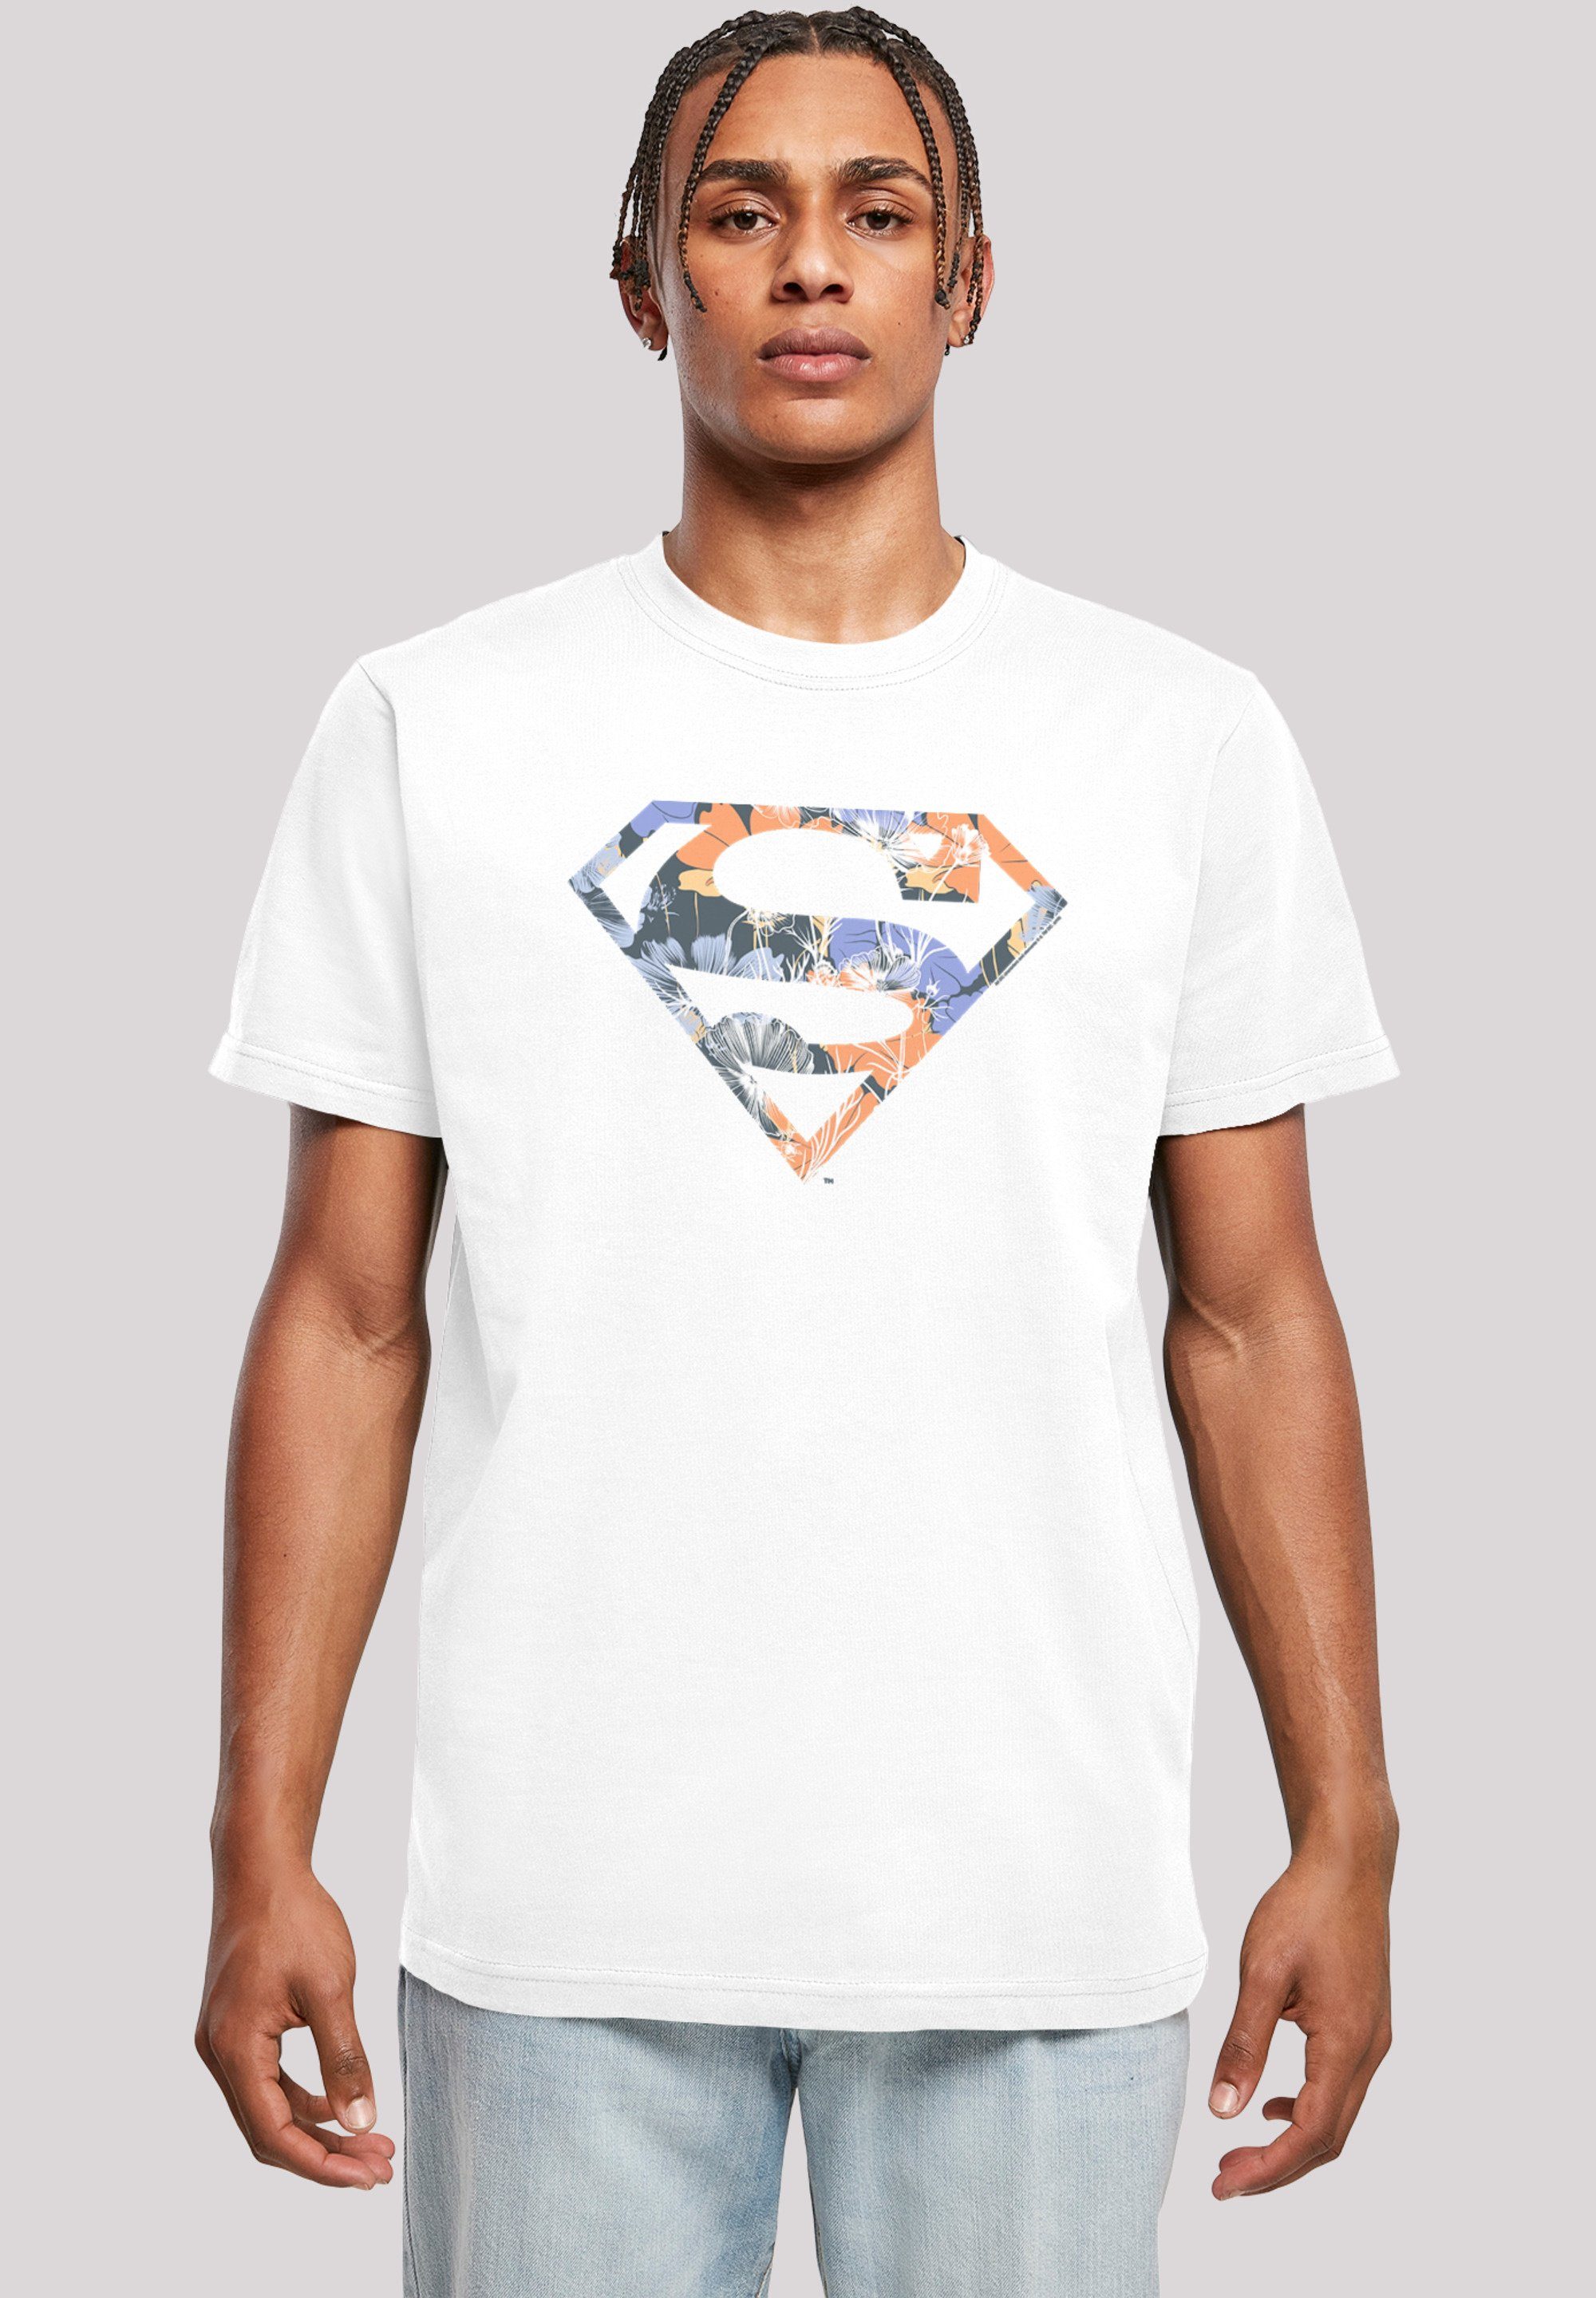 T-Shirt Floral Superheld DC Herren,Premium Logo Comics T-Shirt Merch,Regular-Fit,Basic,Bedruckt weiß Superman F4NT4STIC